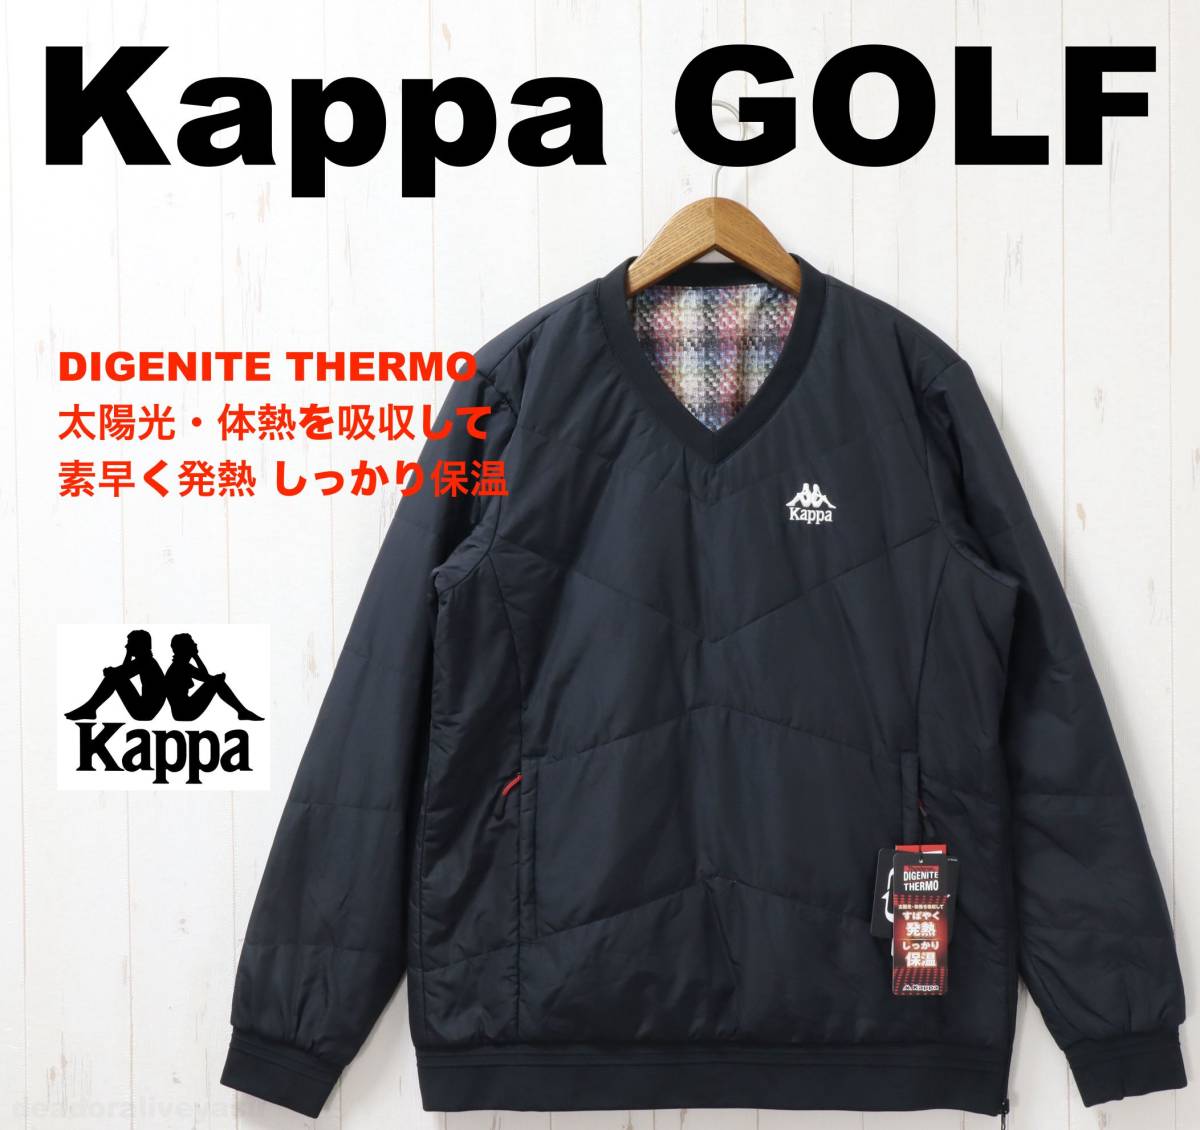 #[M] обычная цена 17,600 иен Kappa Kappa Golf повышение температуры тепловое хранение теплоизоляция с хлопком s need чёрный #